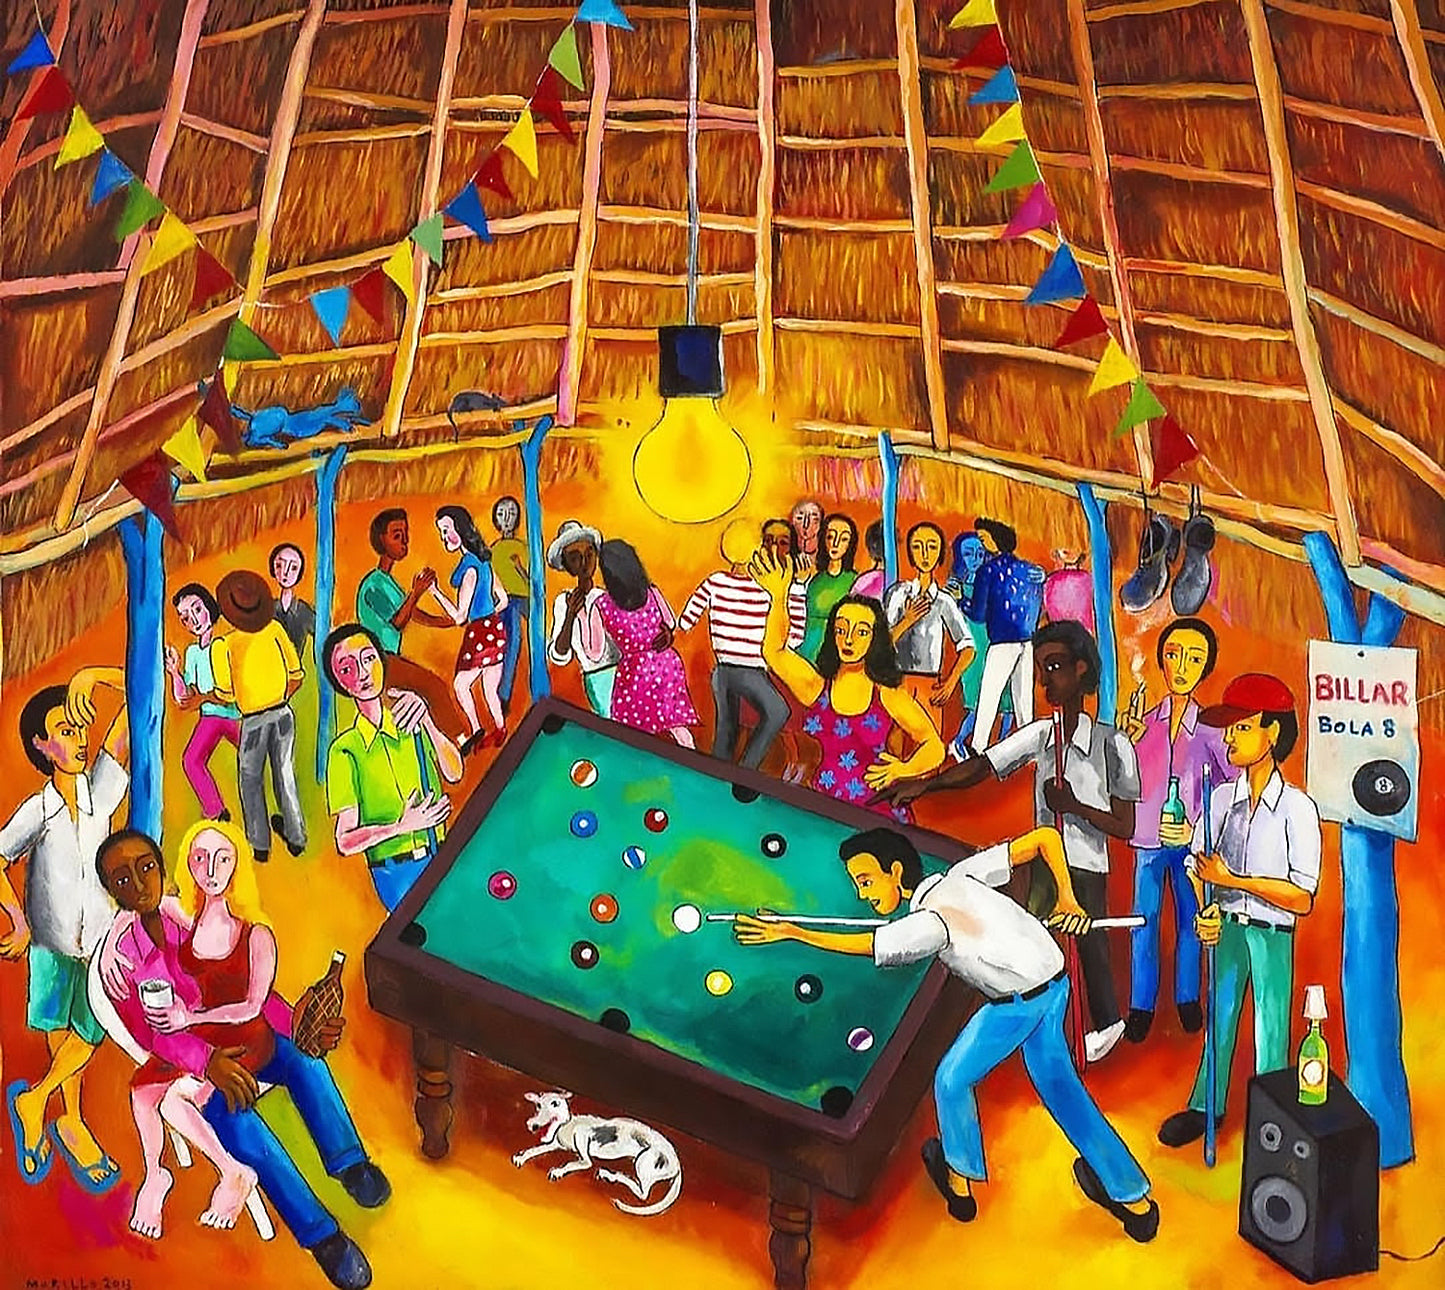 Jose Morillo 40"x50" Billiard in Boca Chica 2013 Acrylic on Canvas #2JM-DR